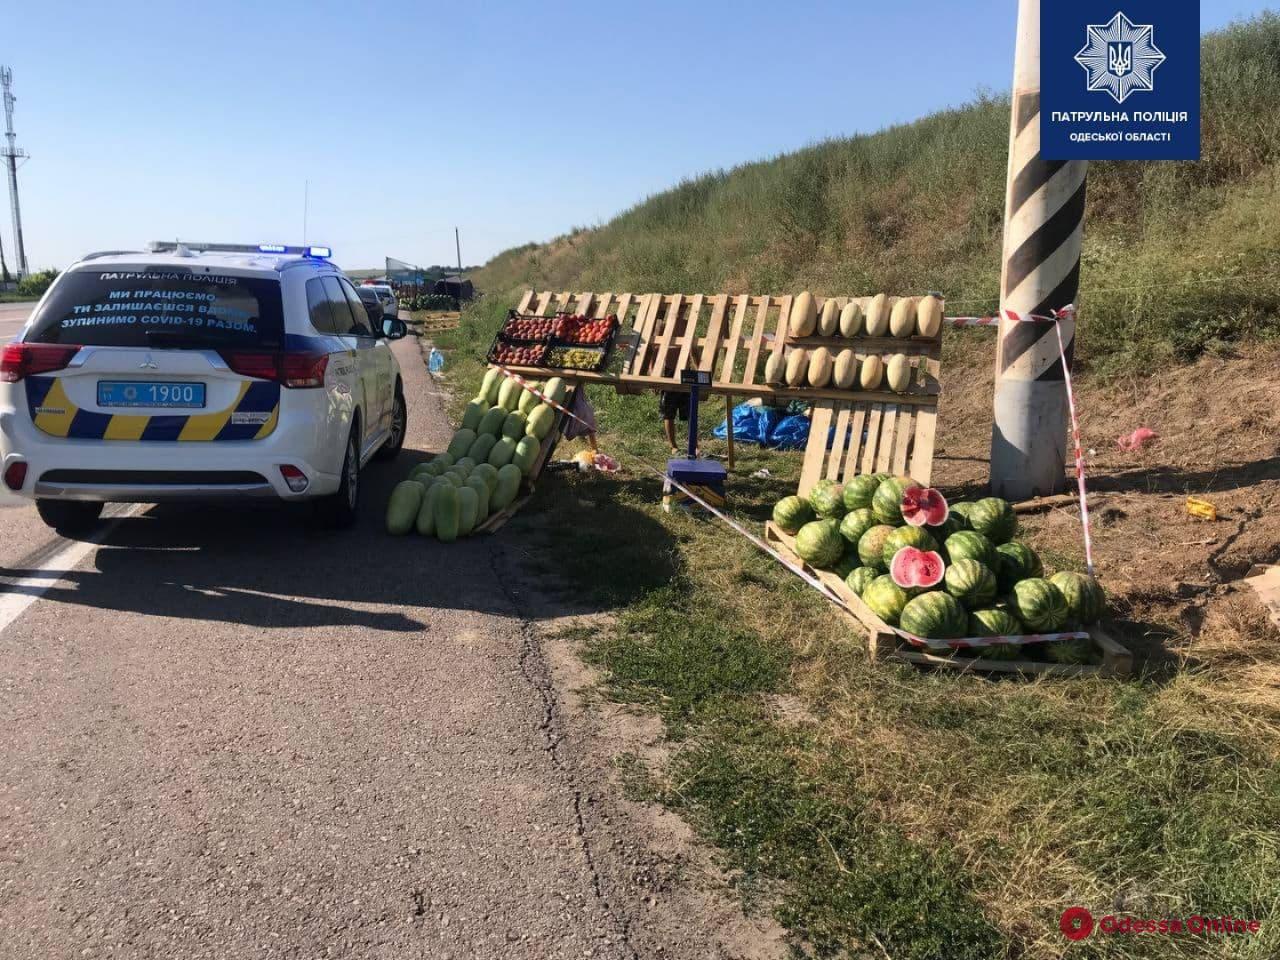 Ограничивают видимость и могут стать причиной ДТП: в Одесской области убирают торговцев овощами с обочин дорог